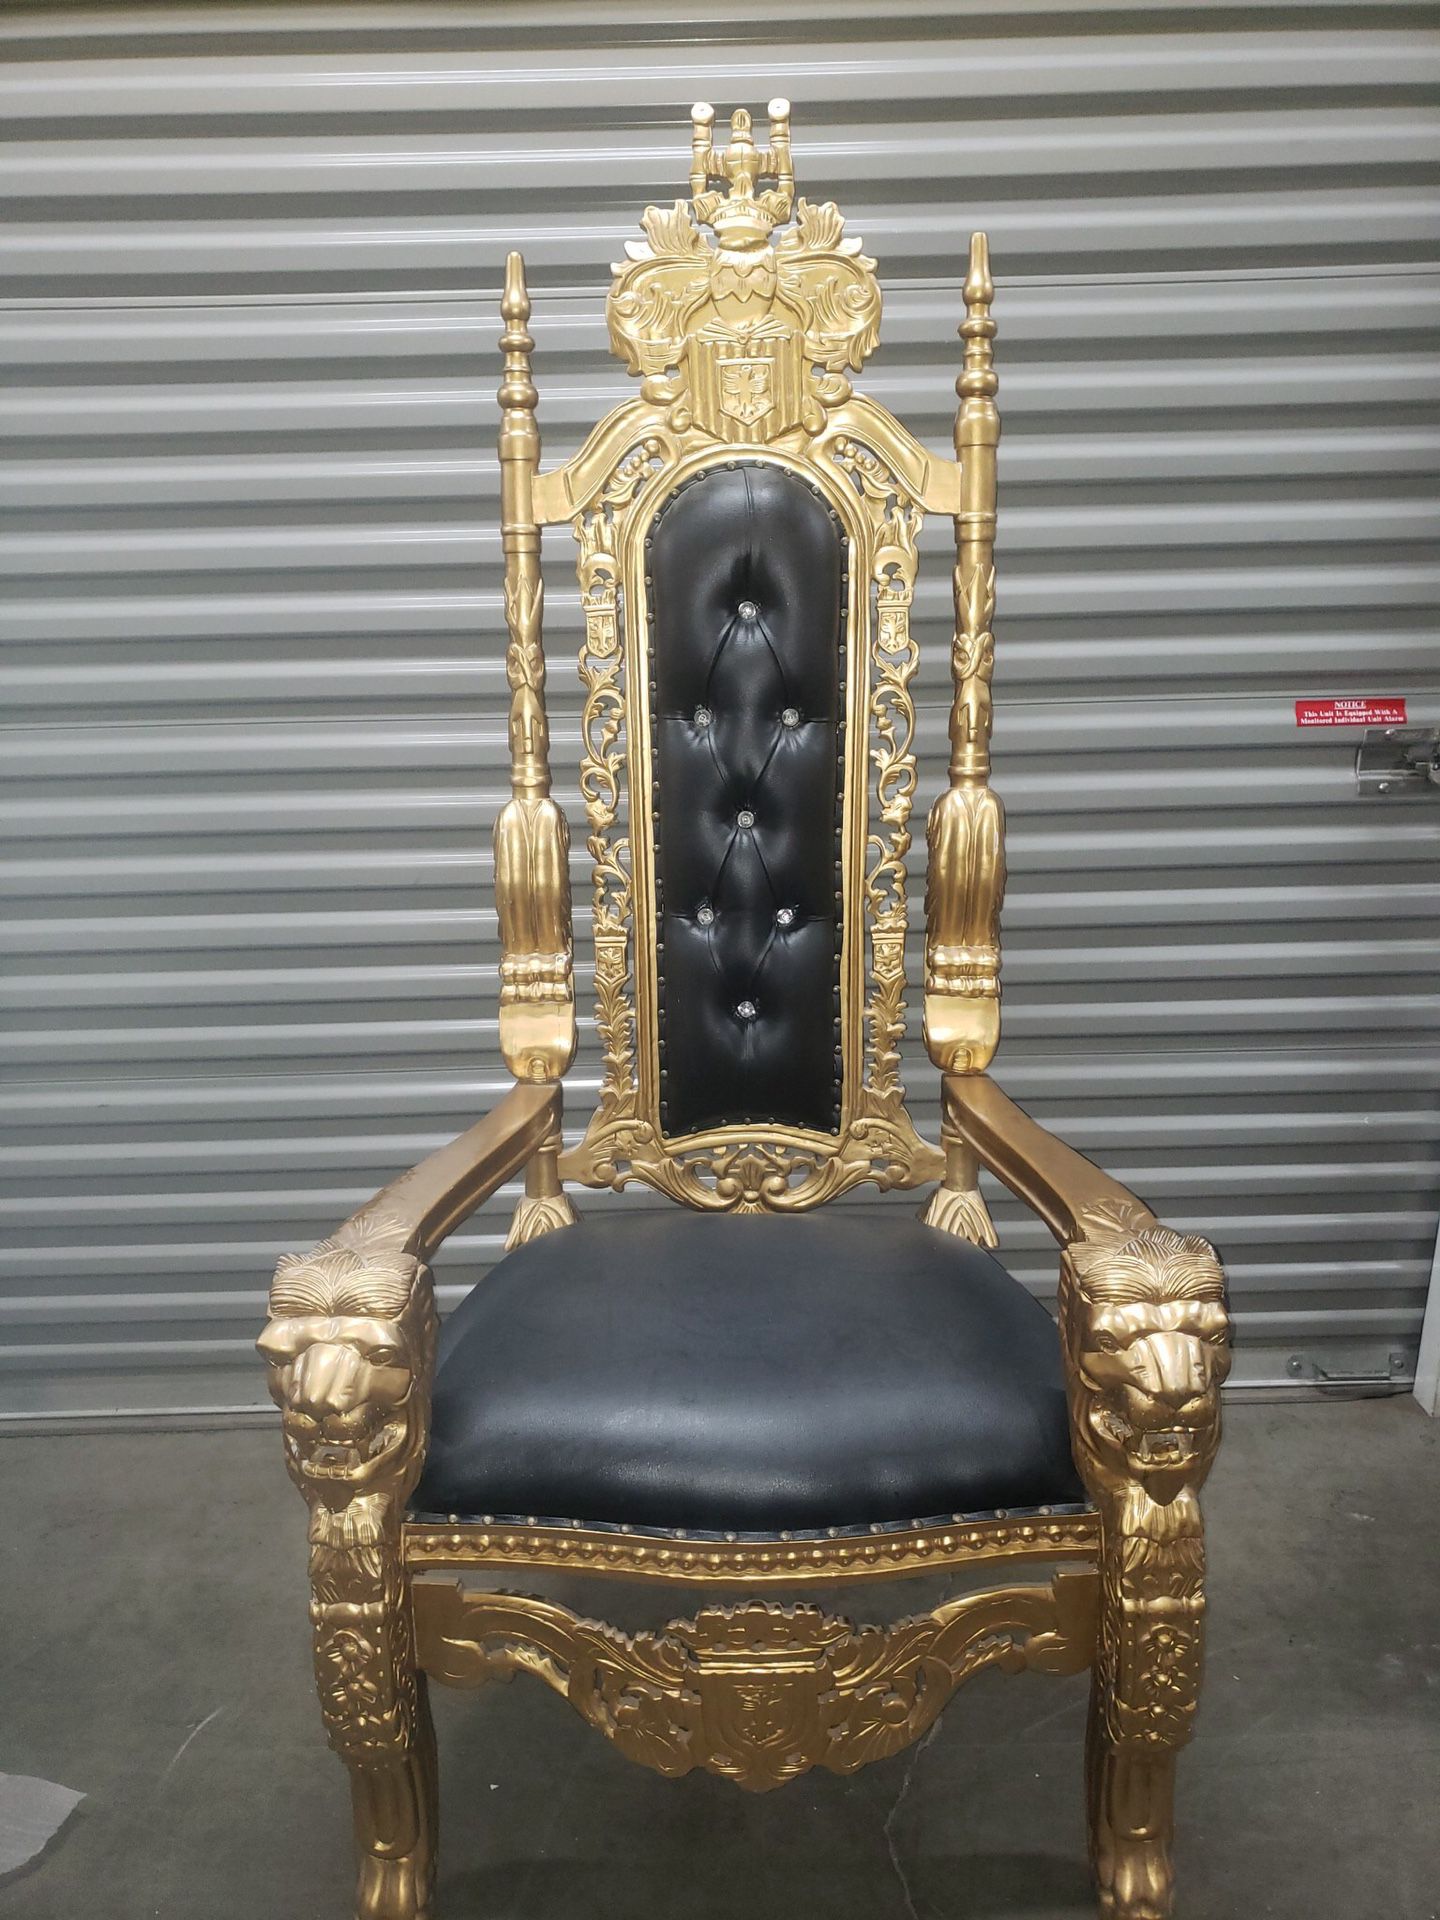 Lion throne chair